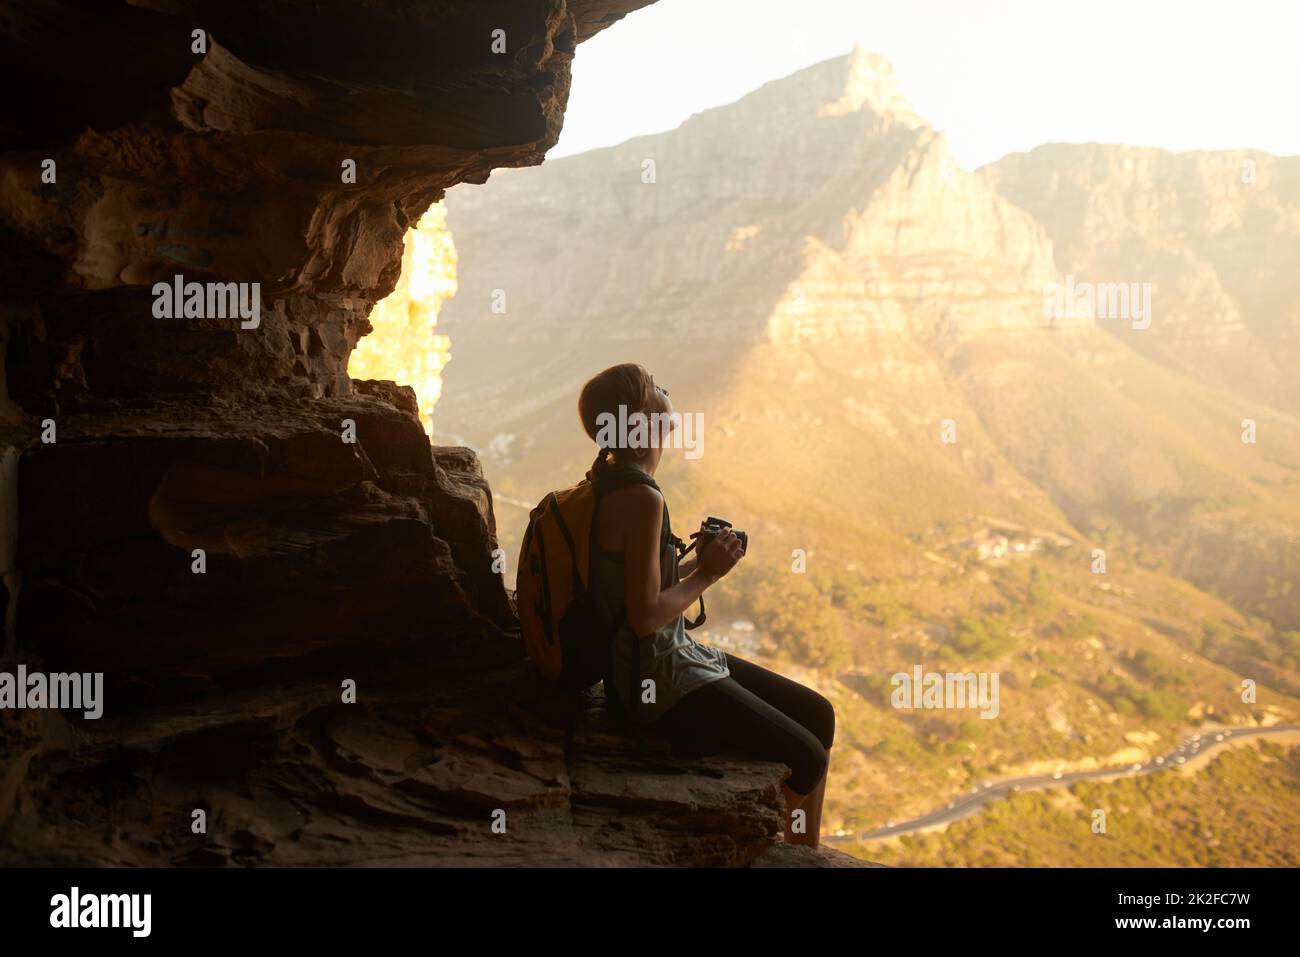 Les souvenirs valent la peine de grimper. Photo d'une femme prenant une photo avec son appareil photo au-dessus d'une montagne. Banque D'Images